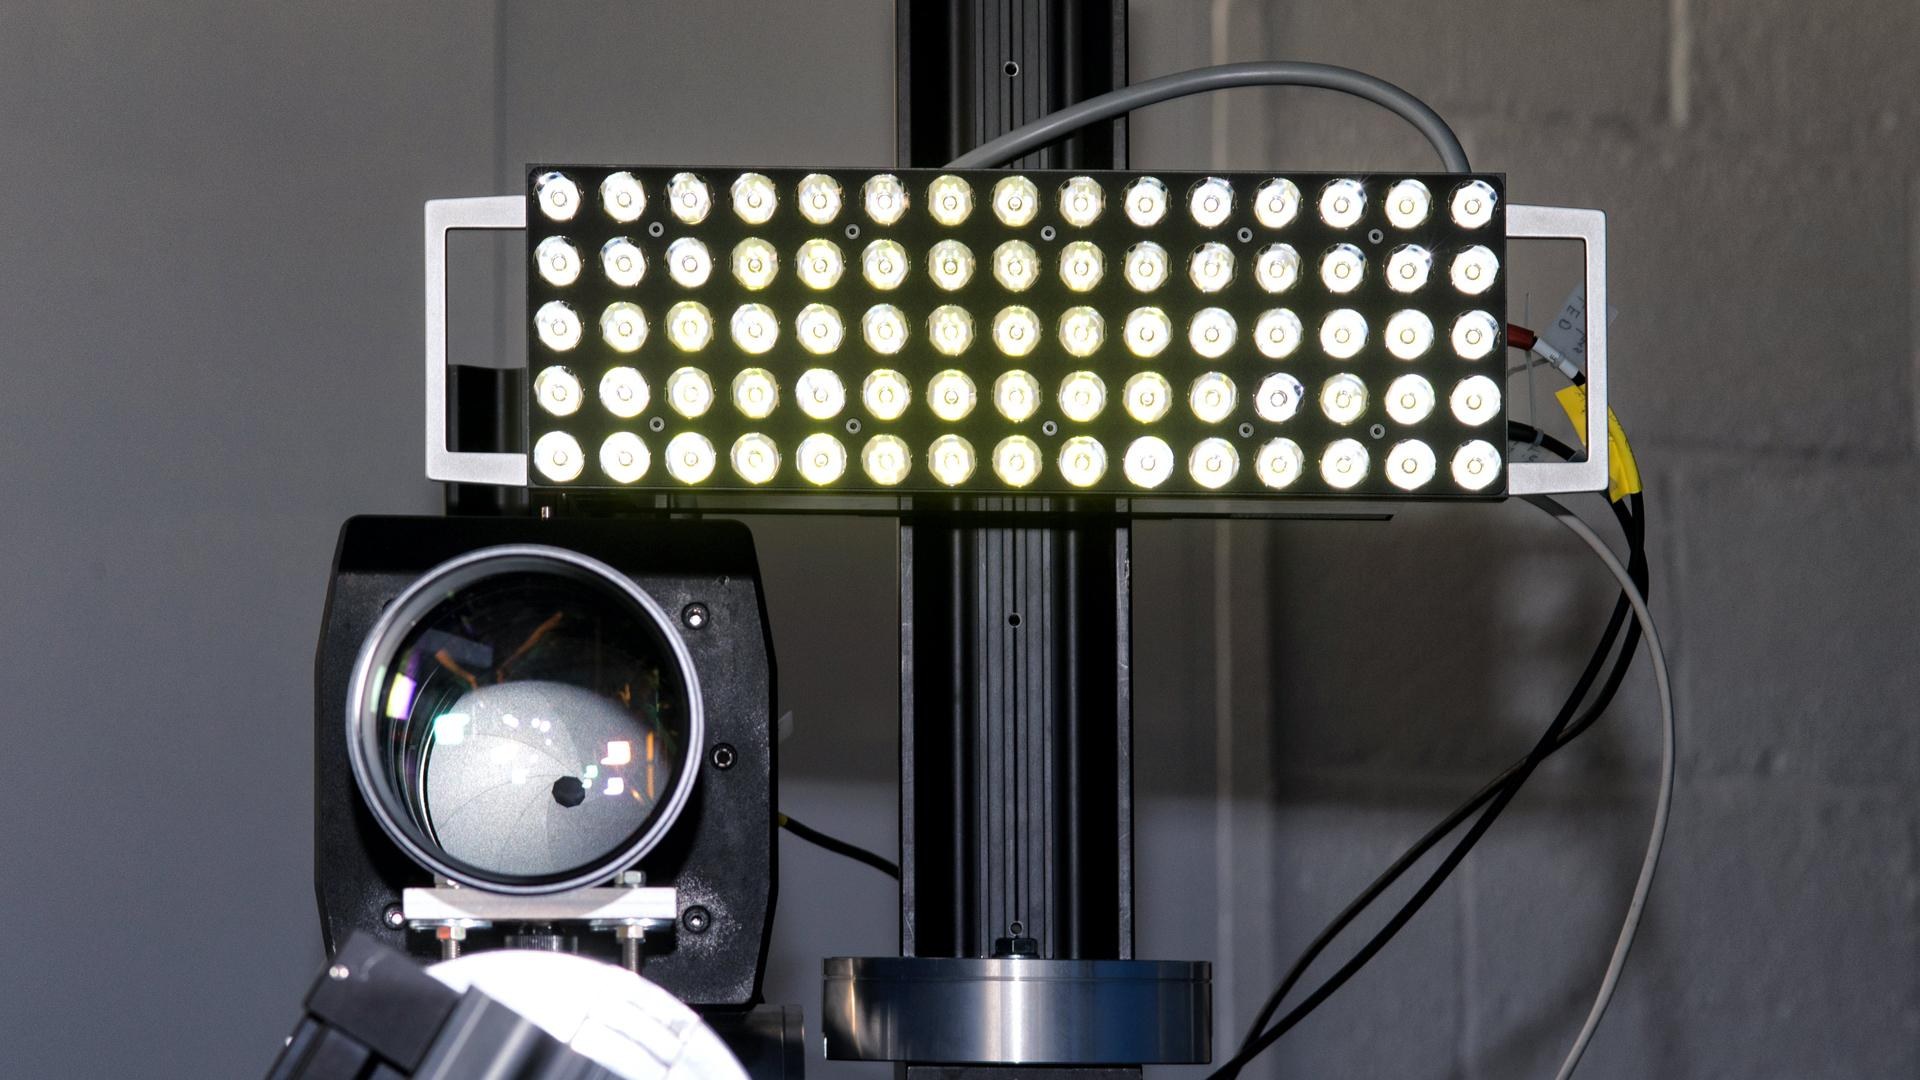 Camera system and LED illumination